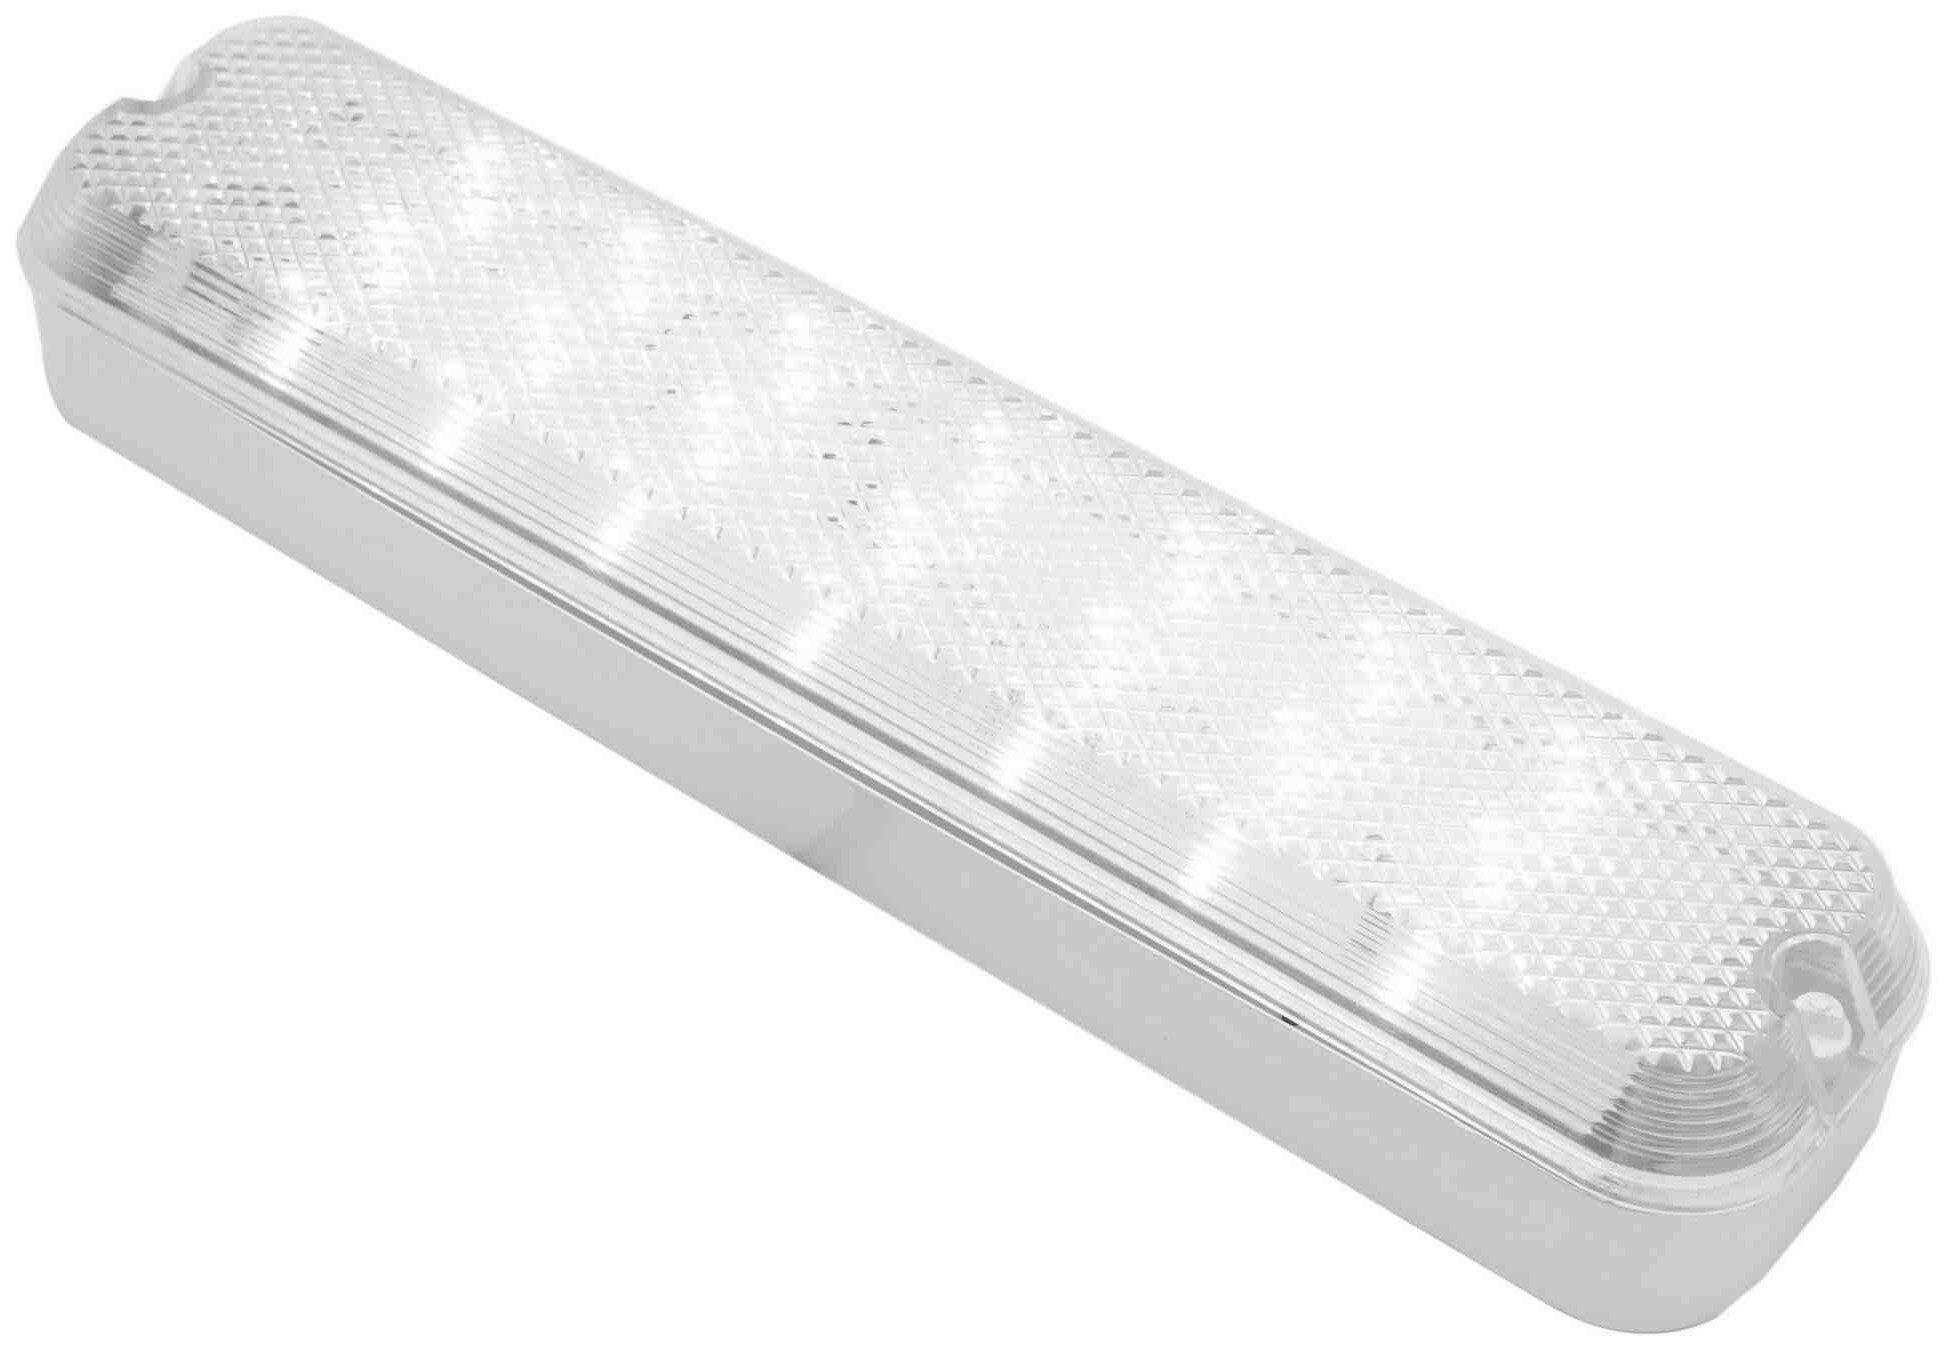 Настенно-потолочный светодиодный светильник Apeyron ДПБ 01-6-001 антивандальный в форме прямоугольника, цвет белый, мощность 6 Вт, световой поток 700 Лм, степень защиты IP40. - фотография № 4